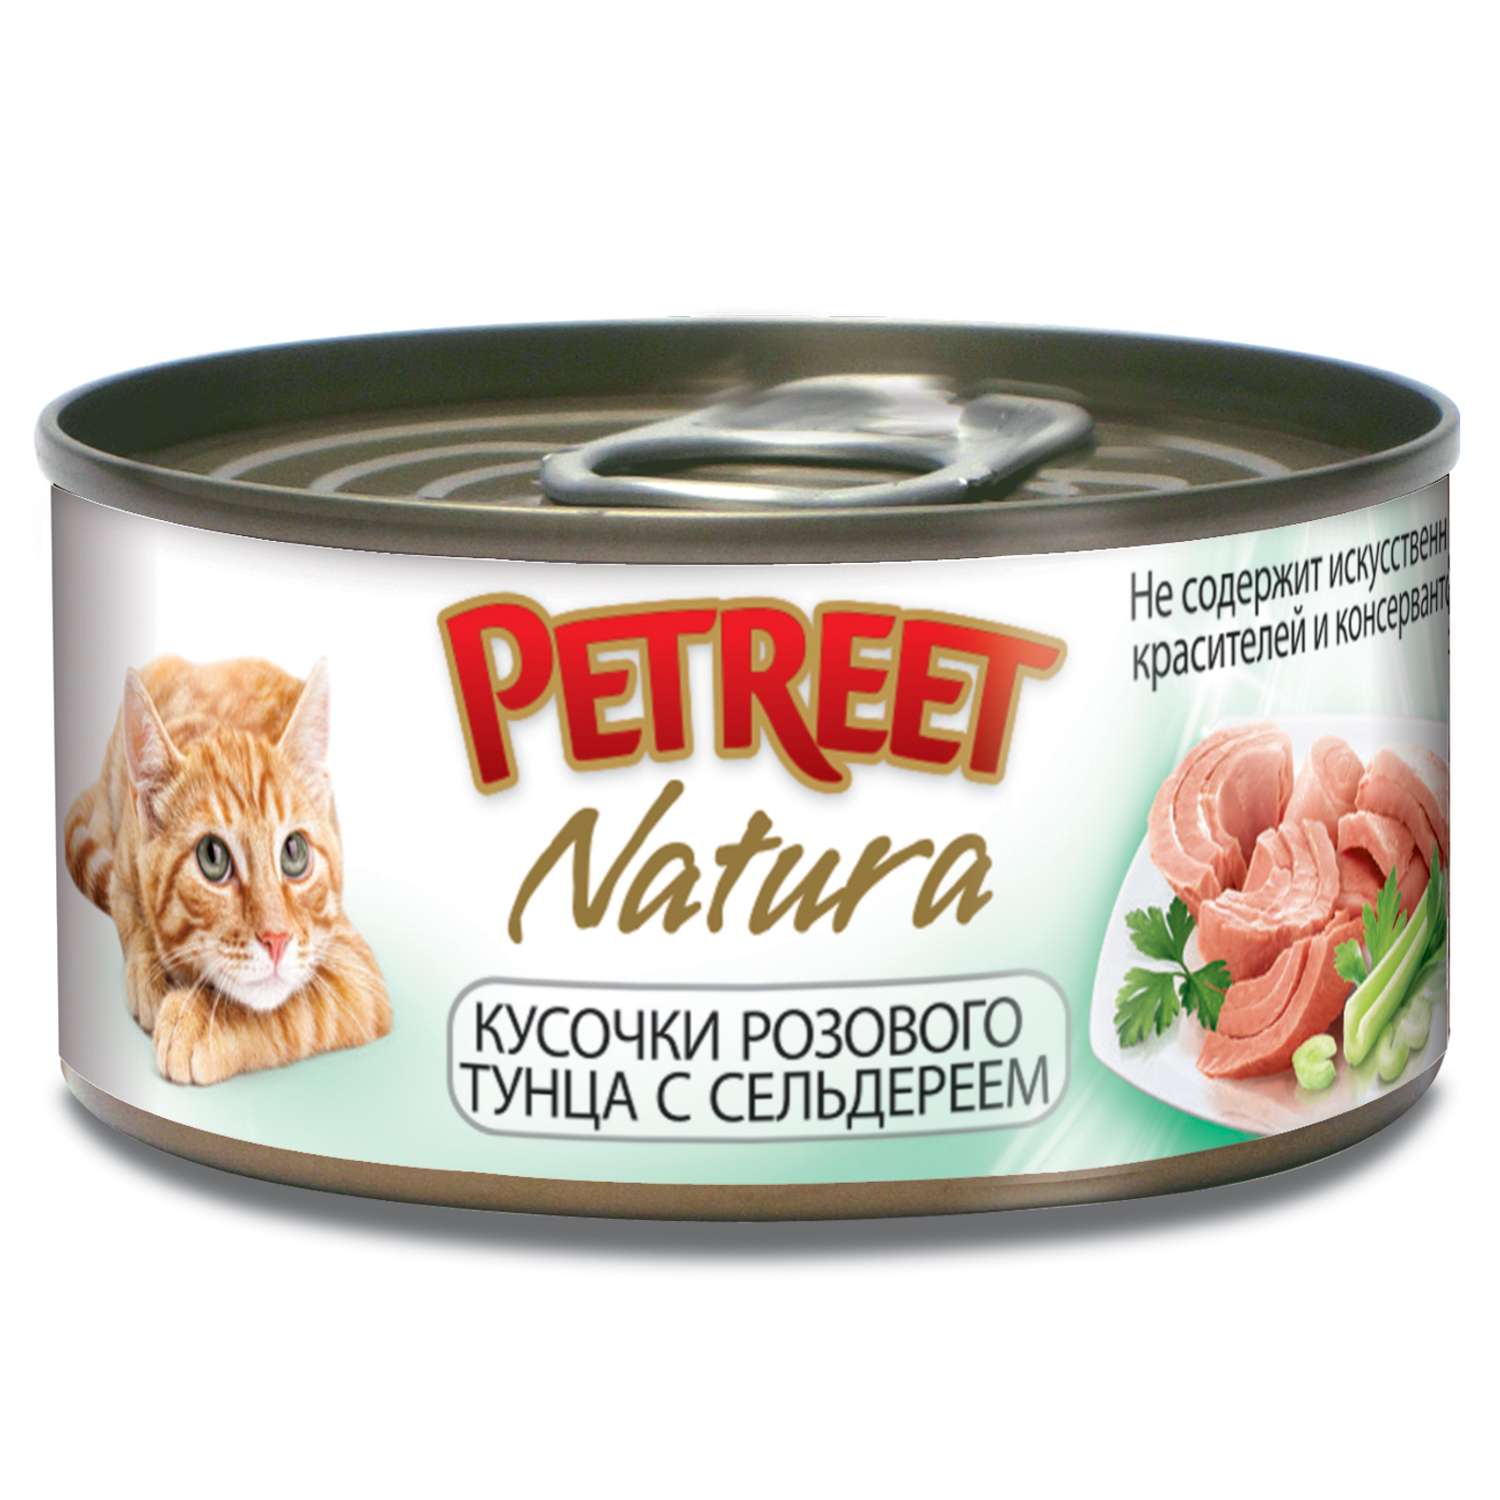 Корм влажный для кошек Petreet 70г кусочки розового тунца с сельдереем консервированный - фото 1